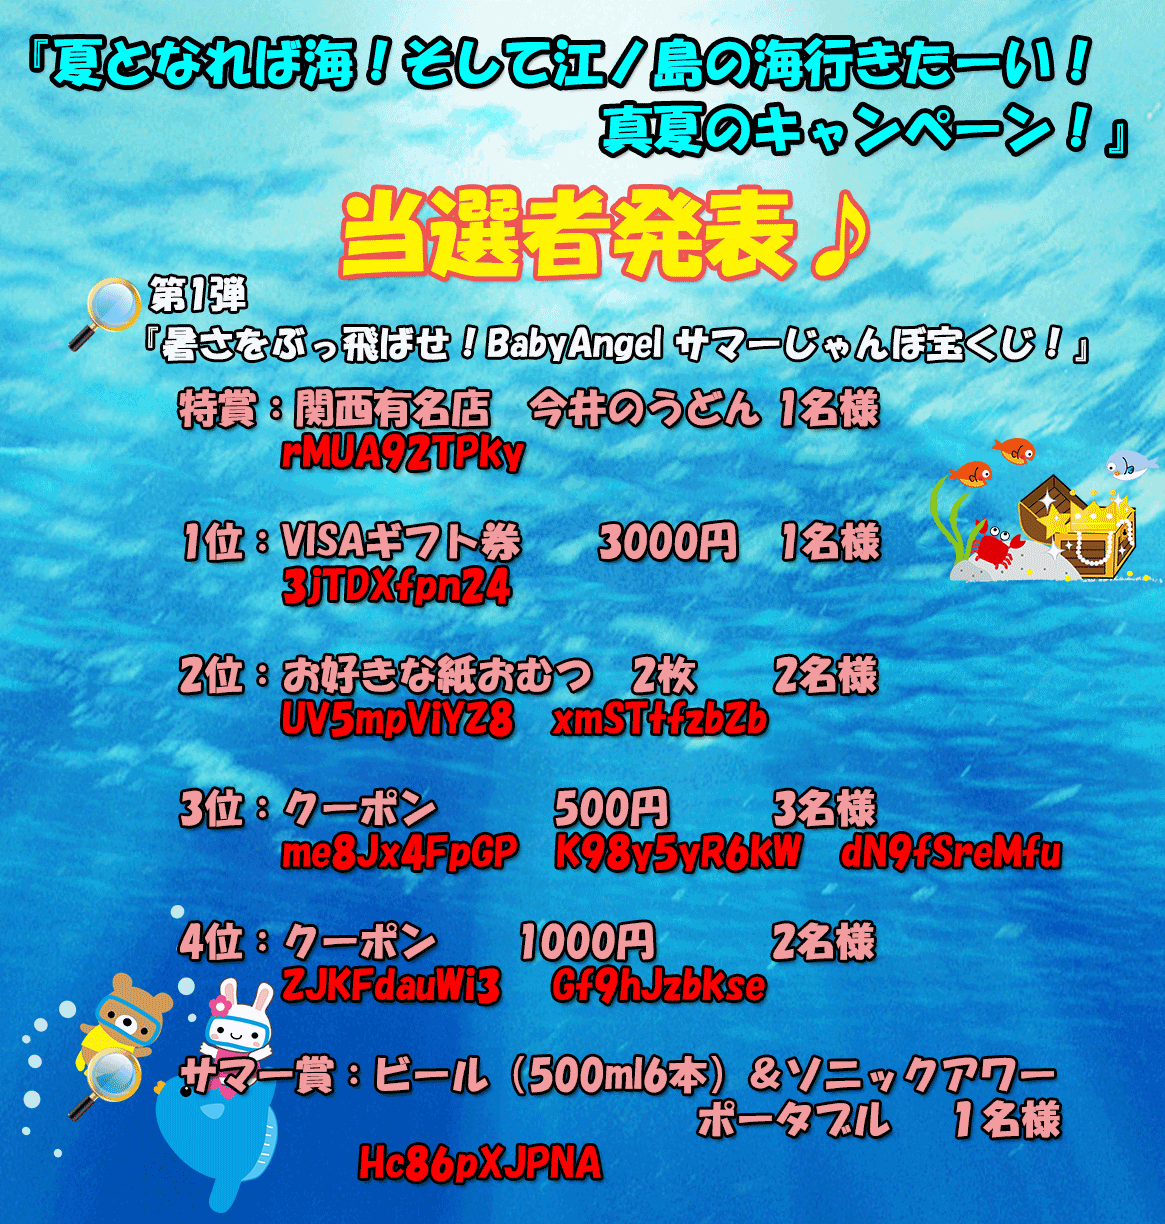 夏となれば海！そして江ノ島の海行きたーい！真夏のキャンペーン！